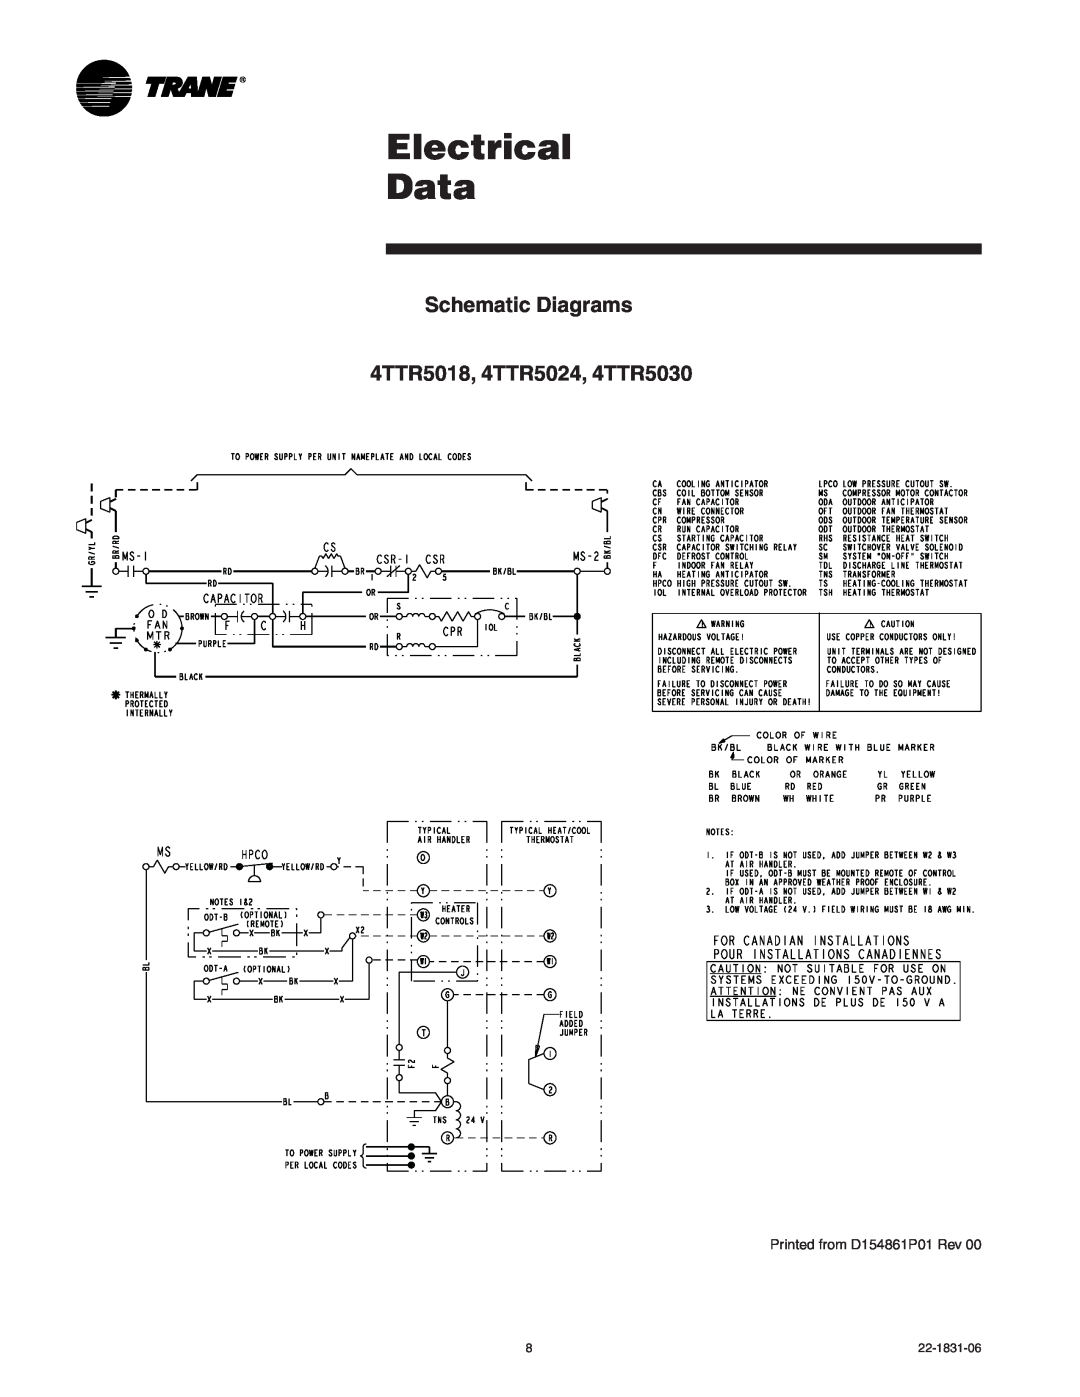 Trane XR15 manual Electrical Data, Schematic Diagrams 4TTR5018, 4TTR5024, 4TTR5030 